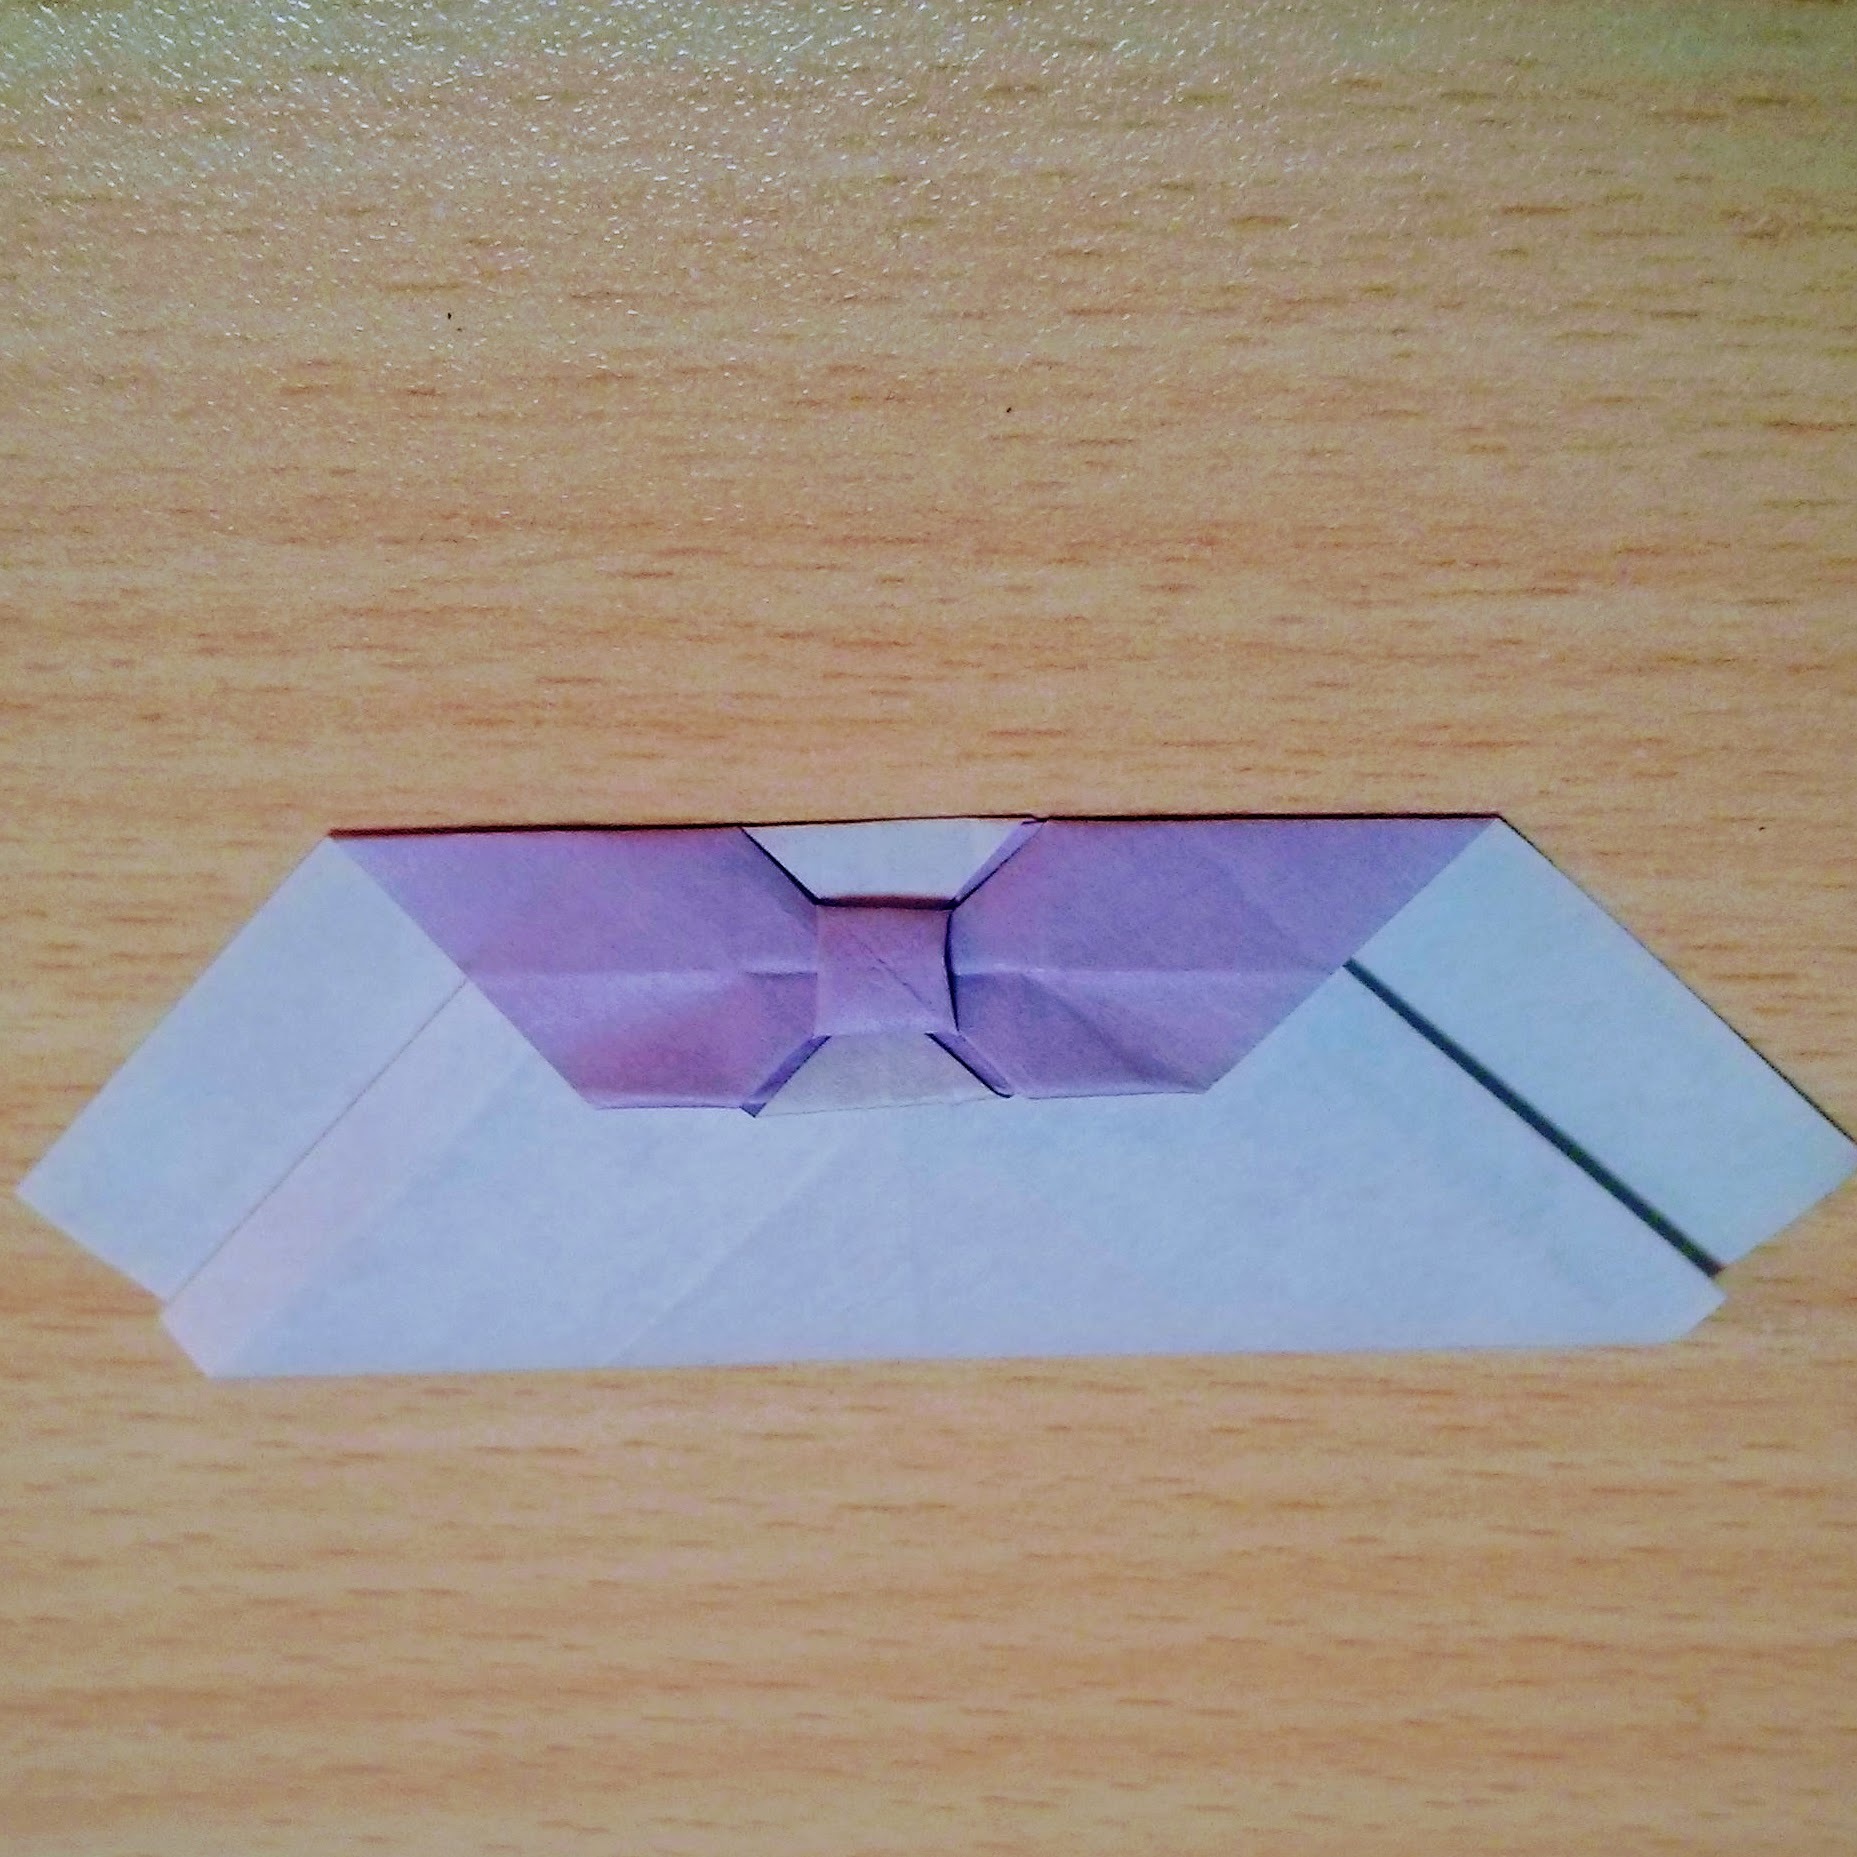 折り紙で作る 指輪 の折り方11選 簡単できる宝石やリボンの作り方を解説 暮らし の